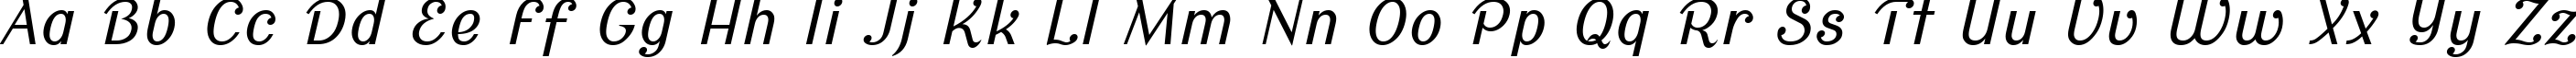 Пример написания английского алфавита шрифтом Cursive Sans